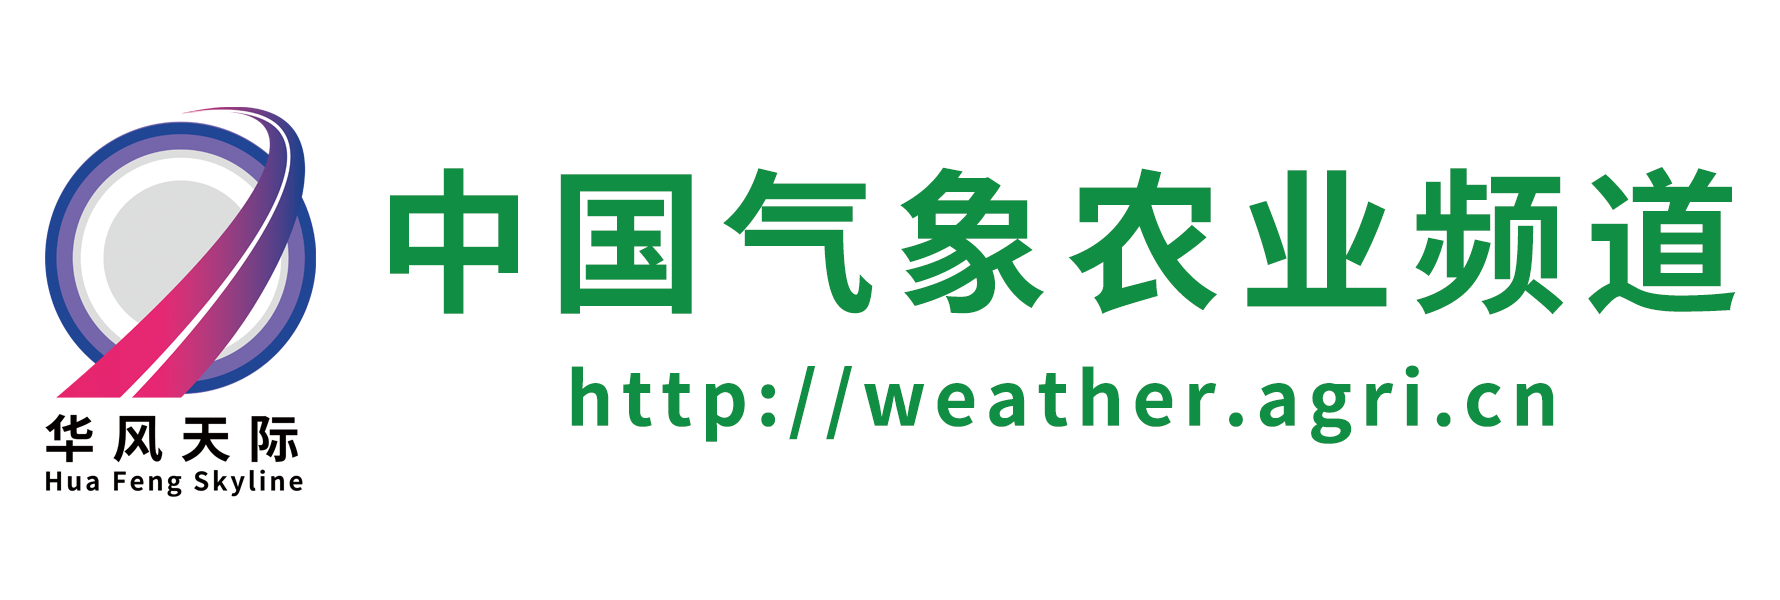 中国气象农业频道